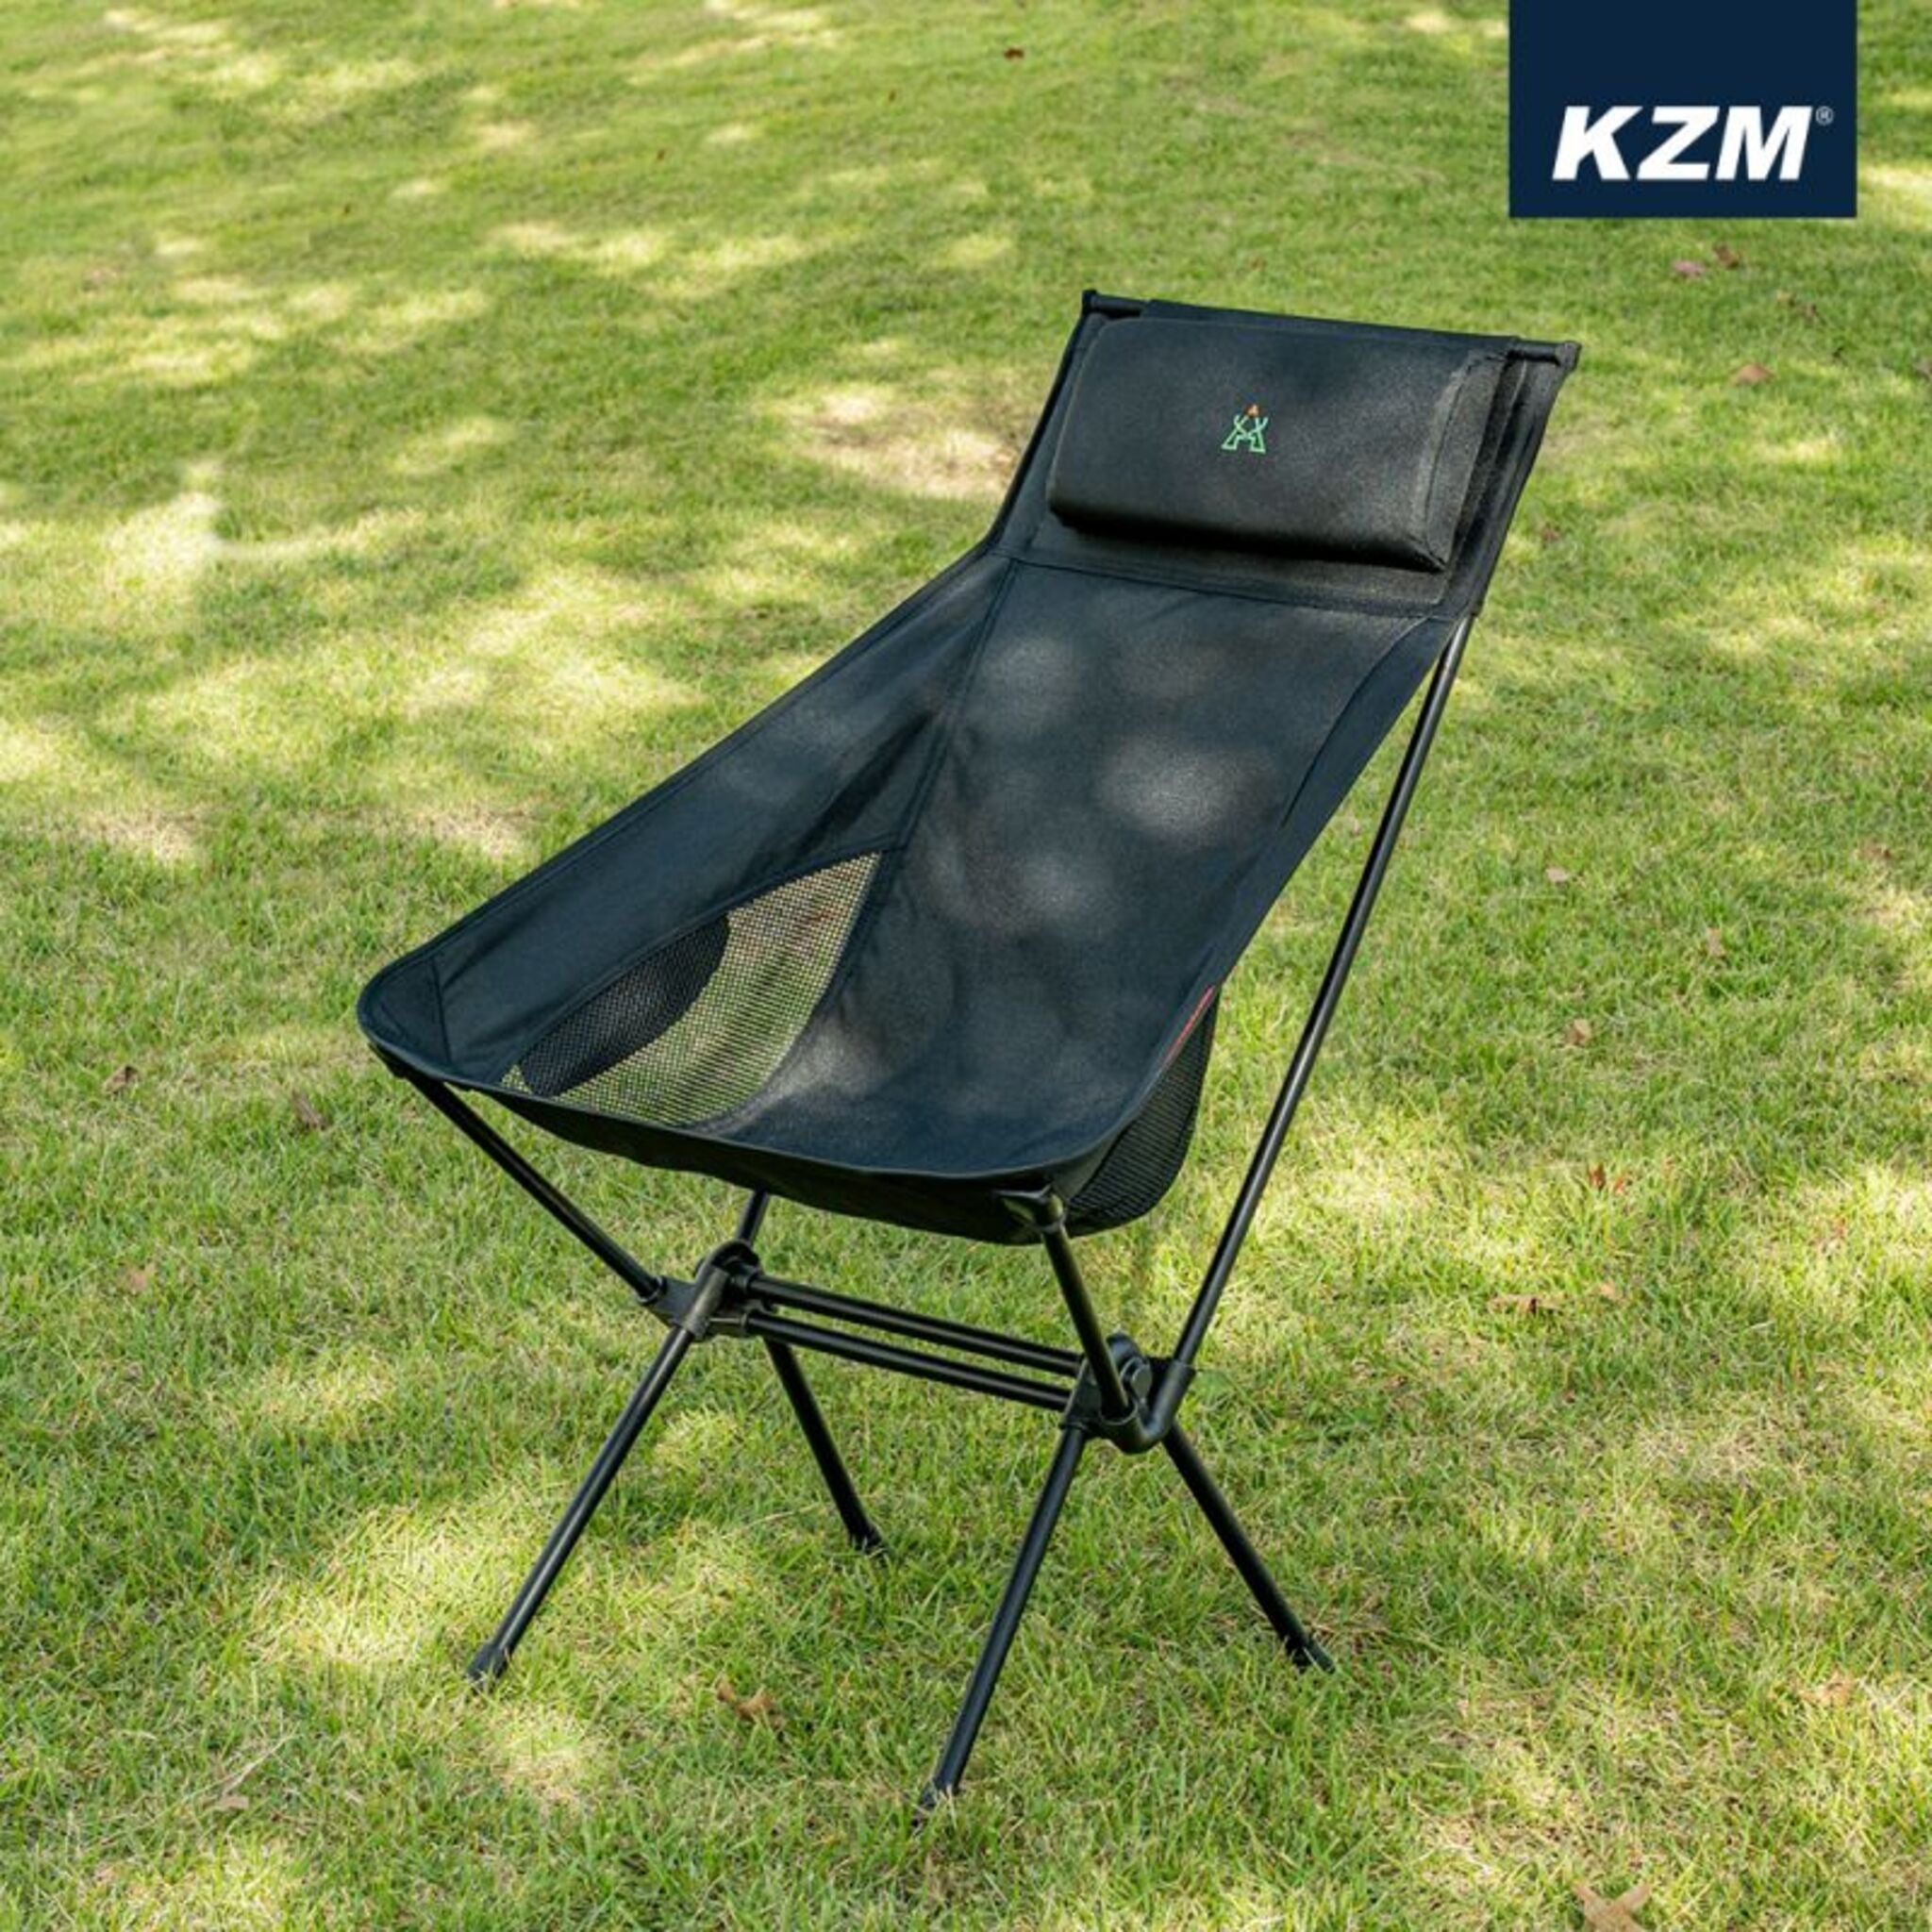 KAZMI KZM 高背輕量椅 K21T1C02